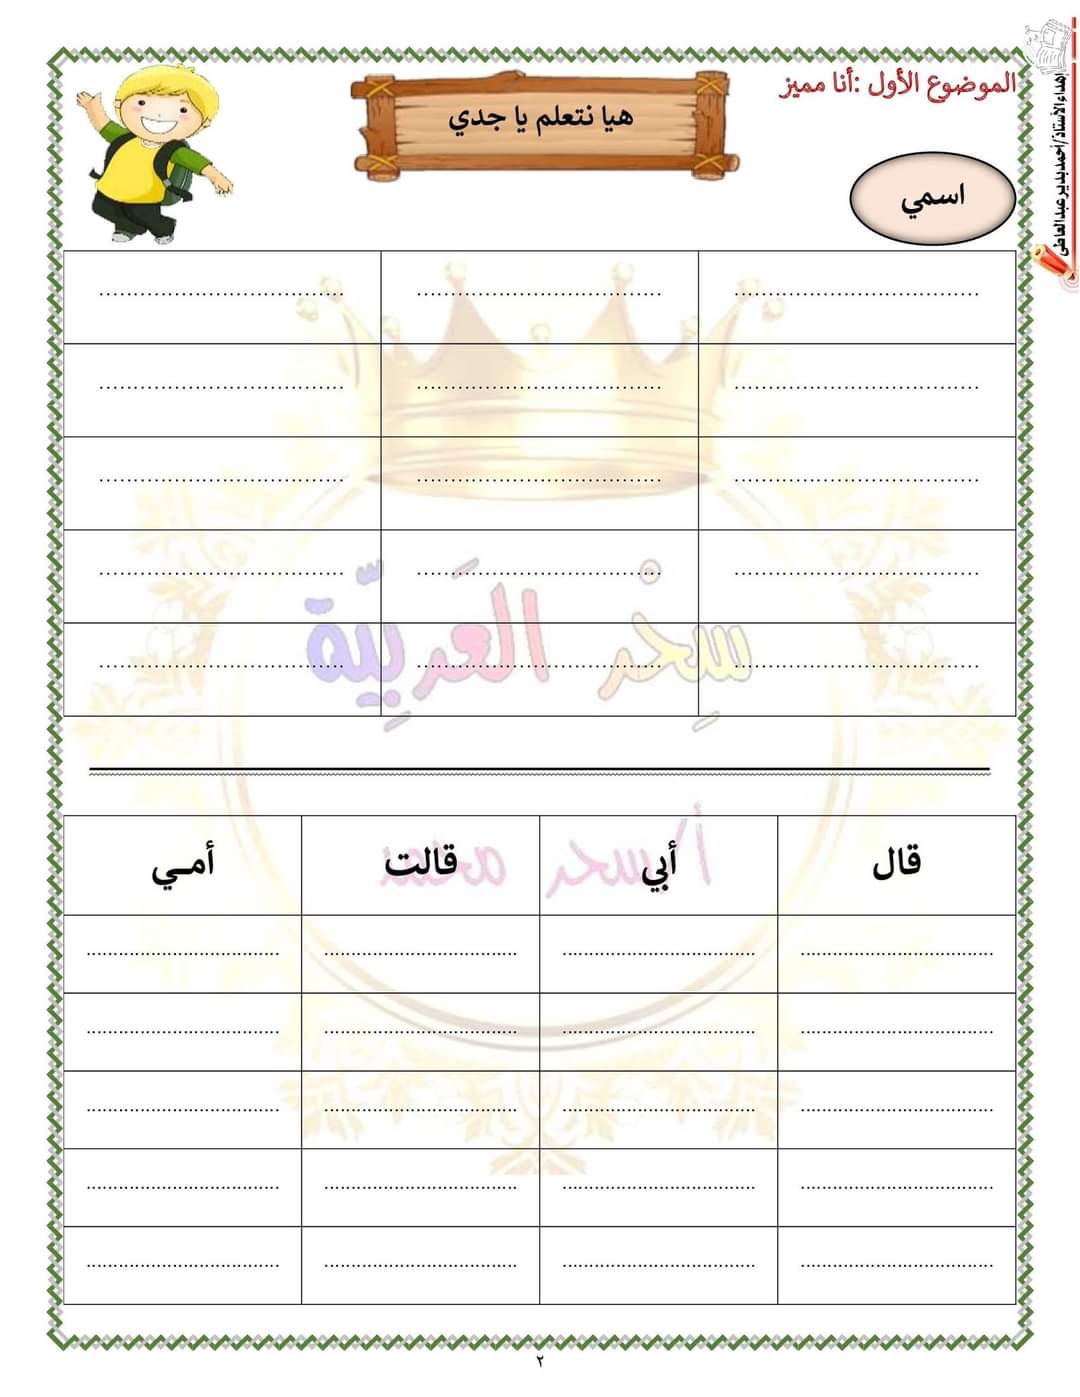 ملزمة اللغة العربية للصف الأول الابتدائي الترم الاول سحر محمد